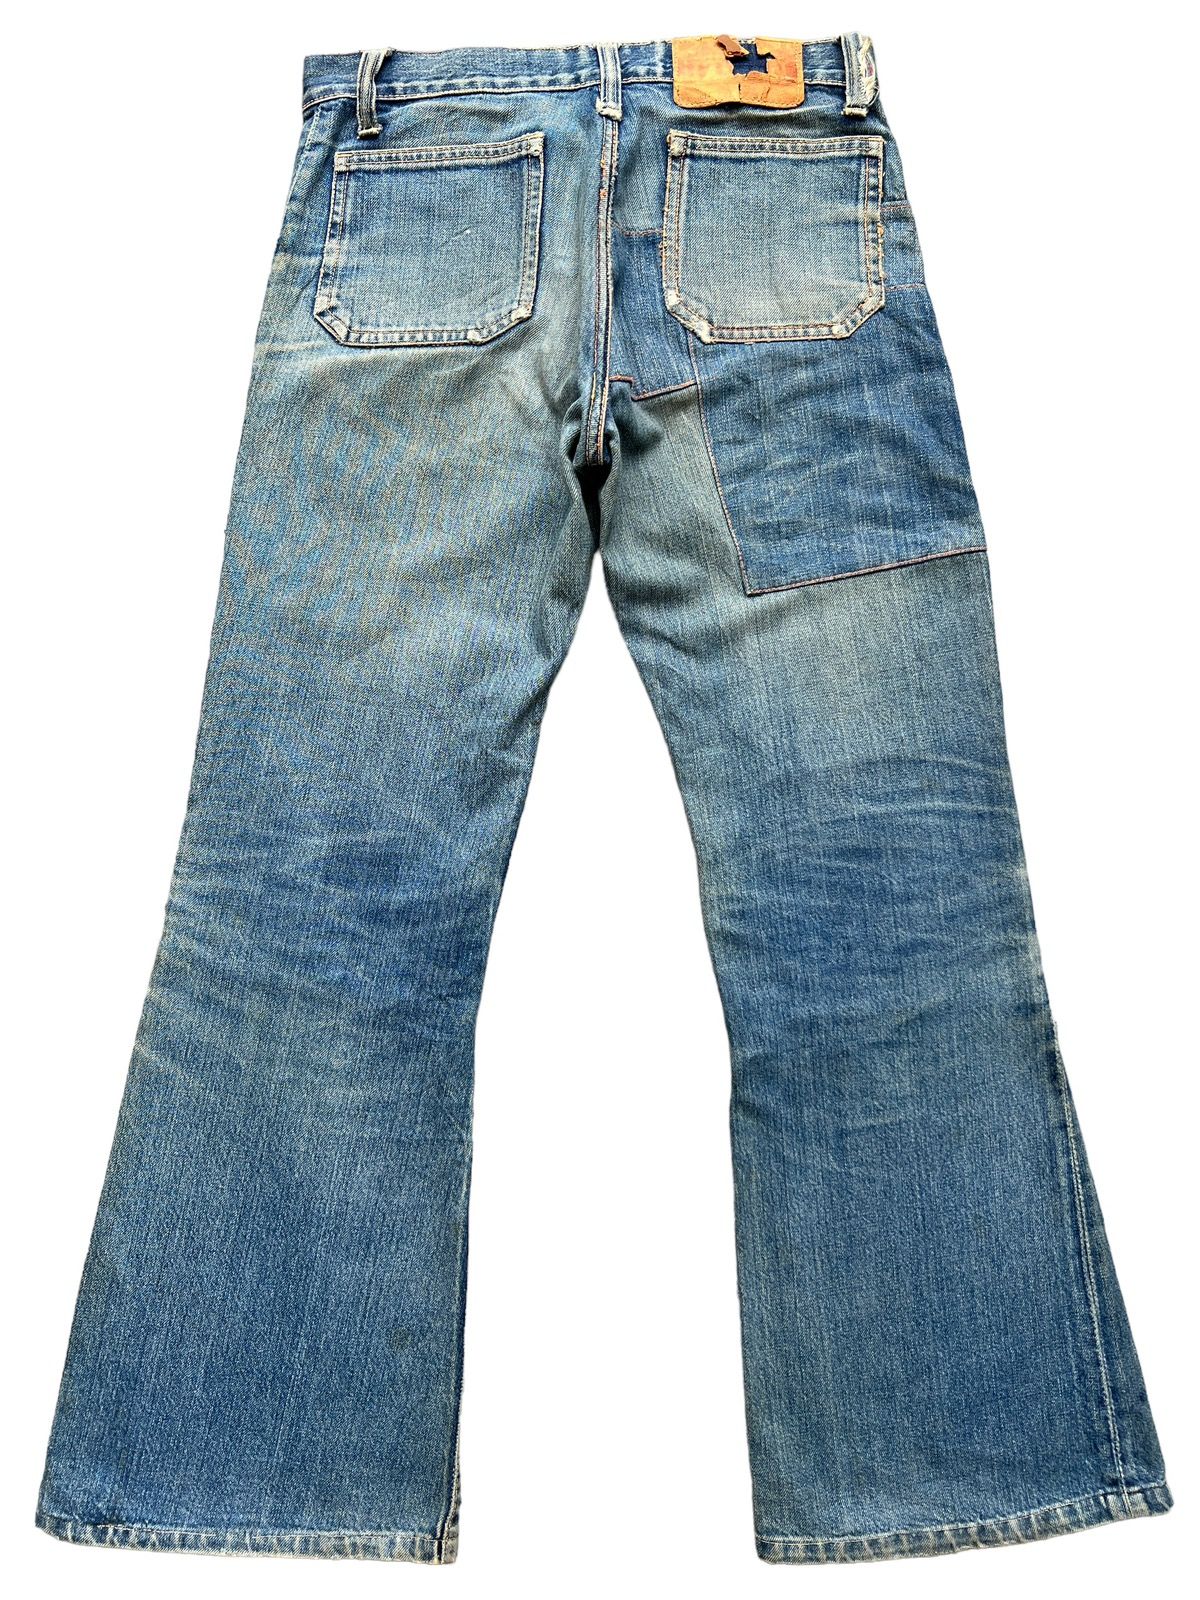 Hype - Vintage 80s Edwin Bushpant Patchwork Distressed Flare Jeans - 3